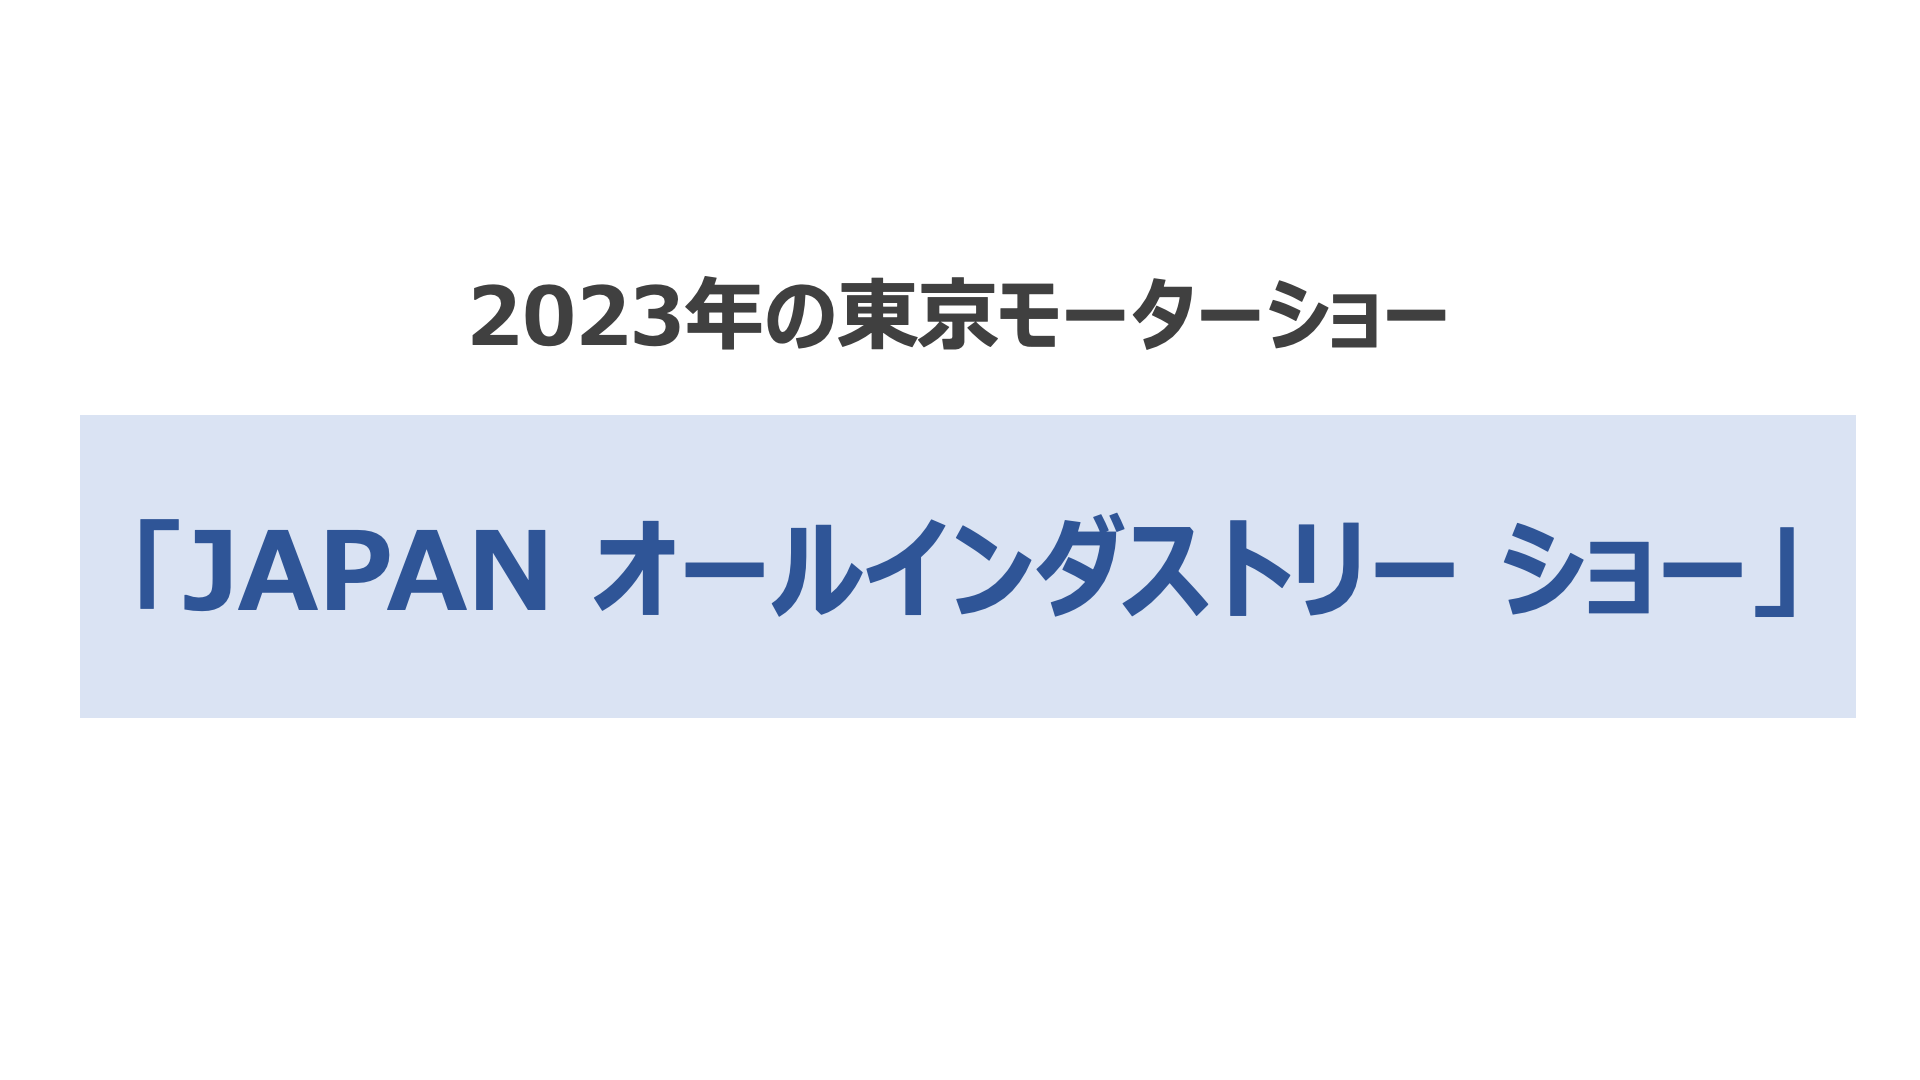 2023年の東京モーターショー「JAPAN オールインダストリー ショー」